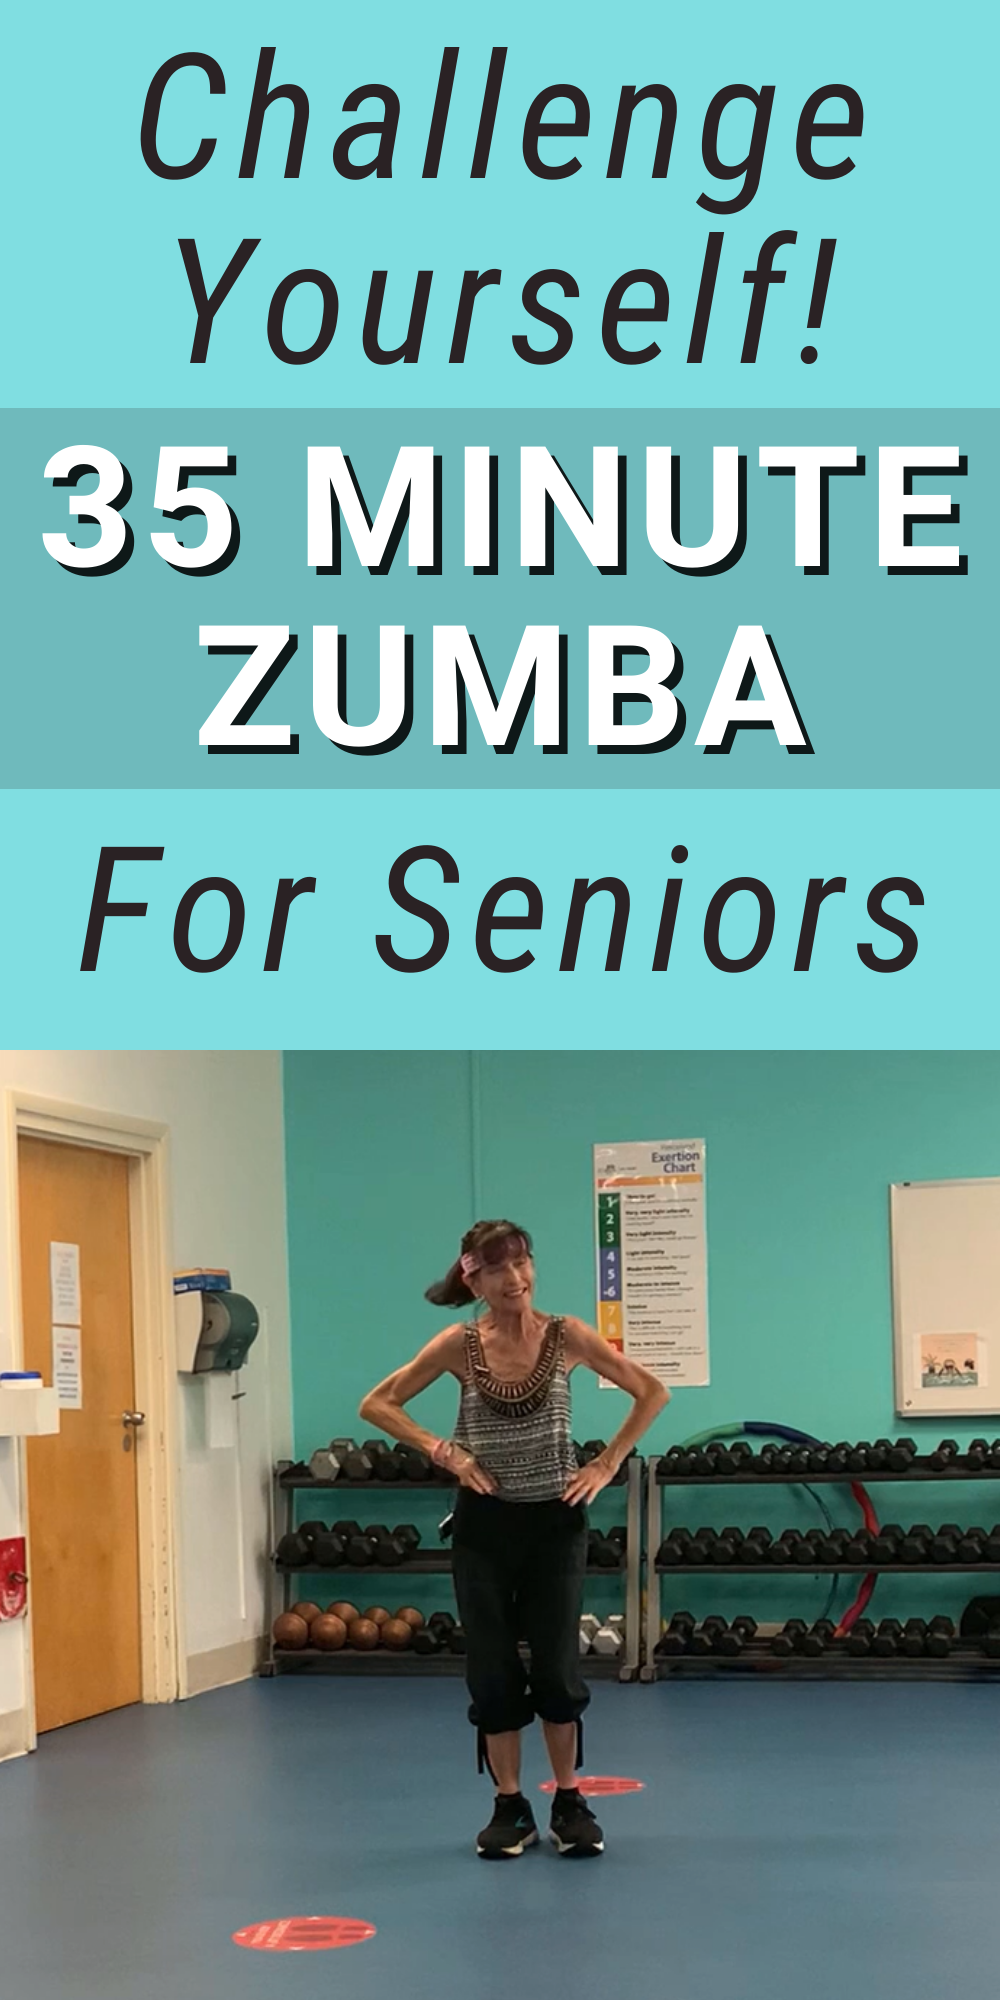 35 minute zumba for seniors